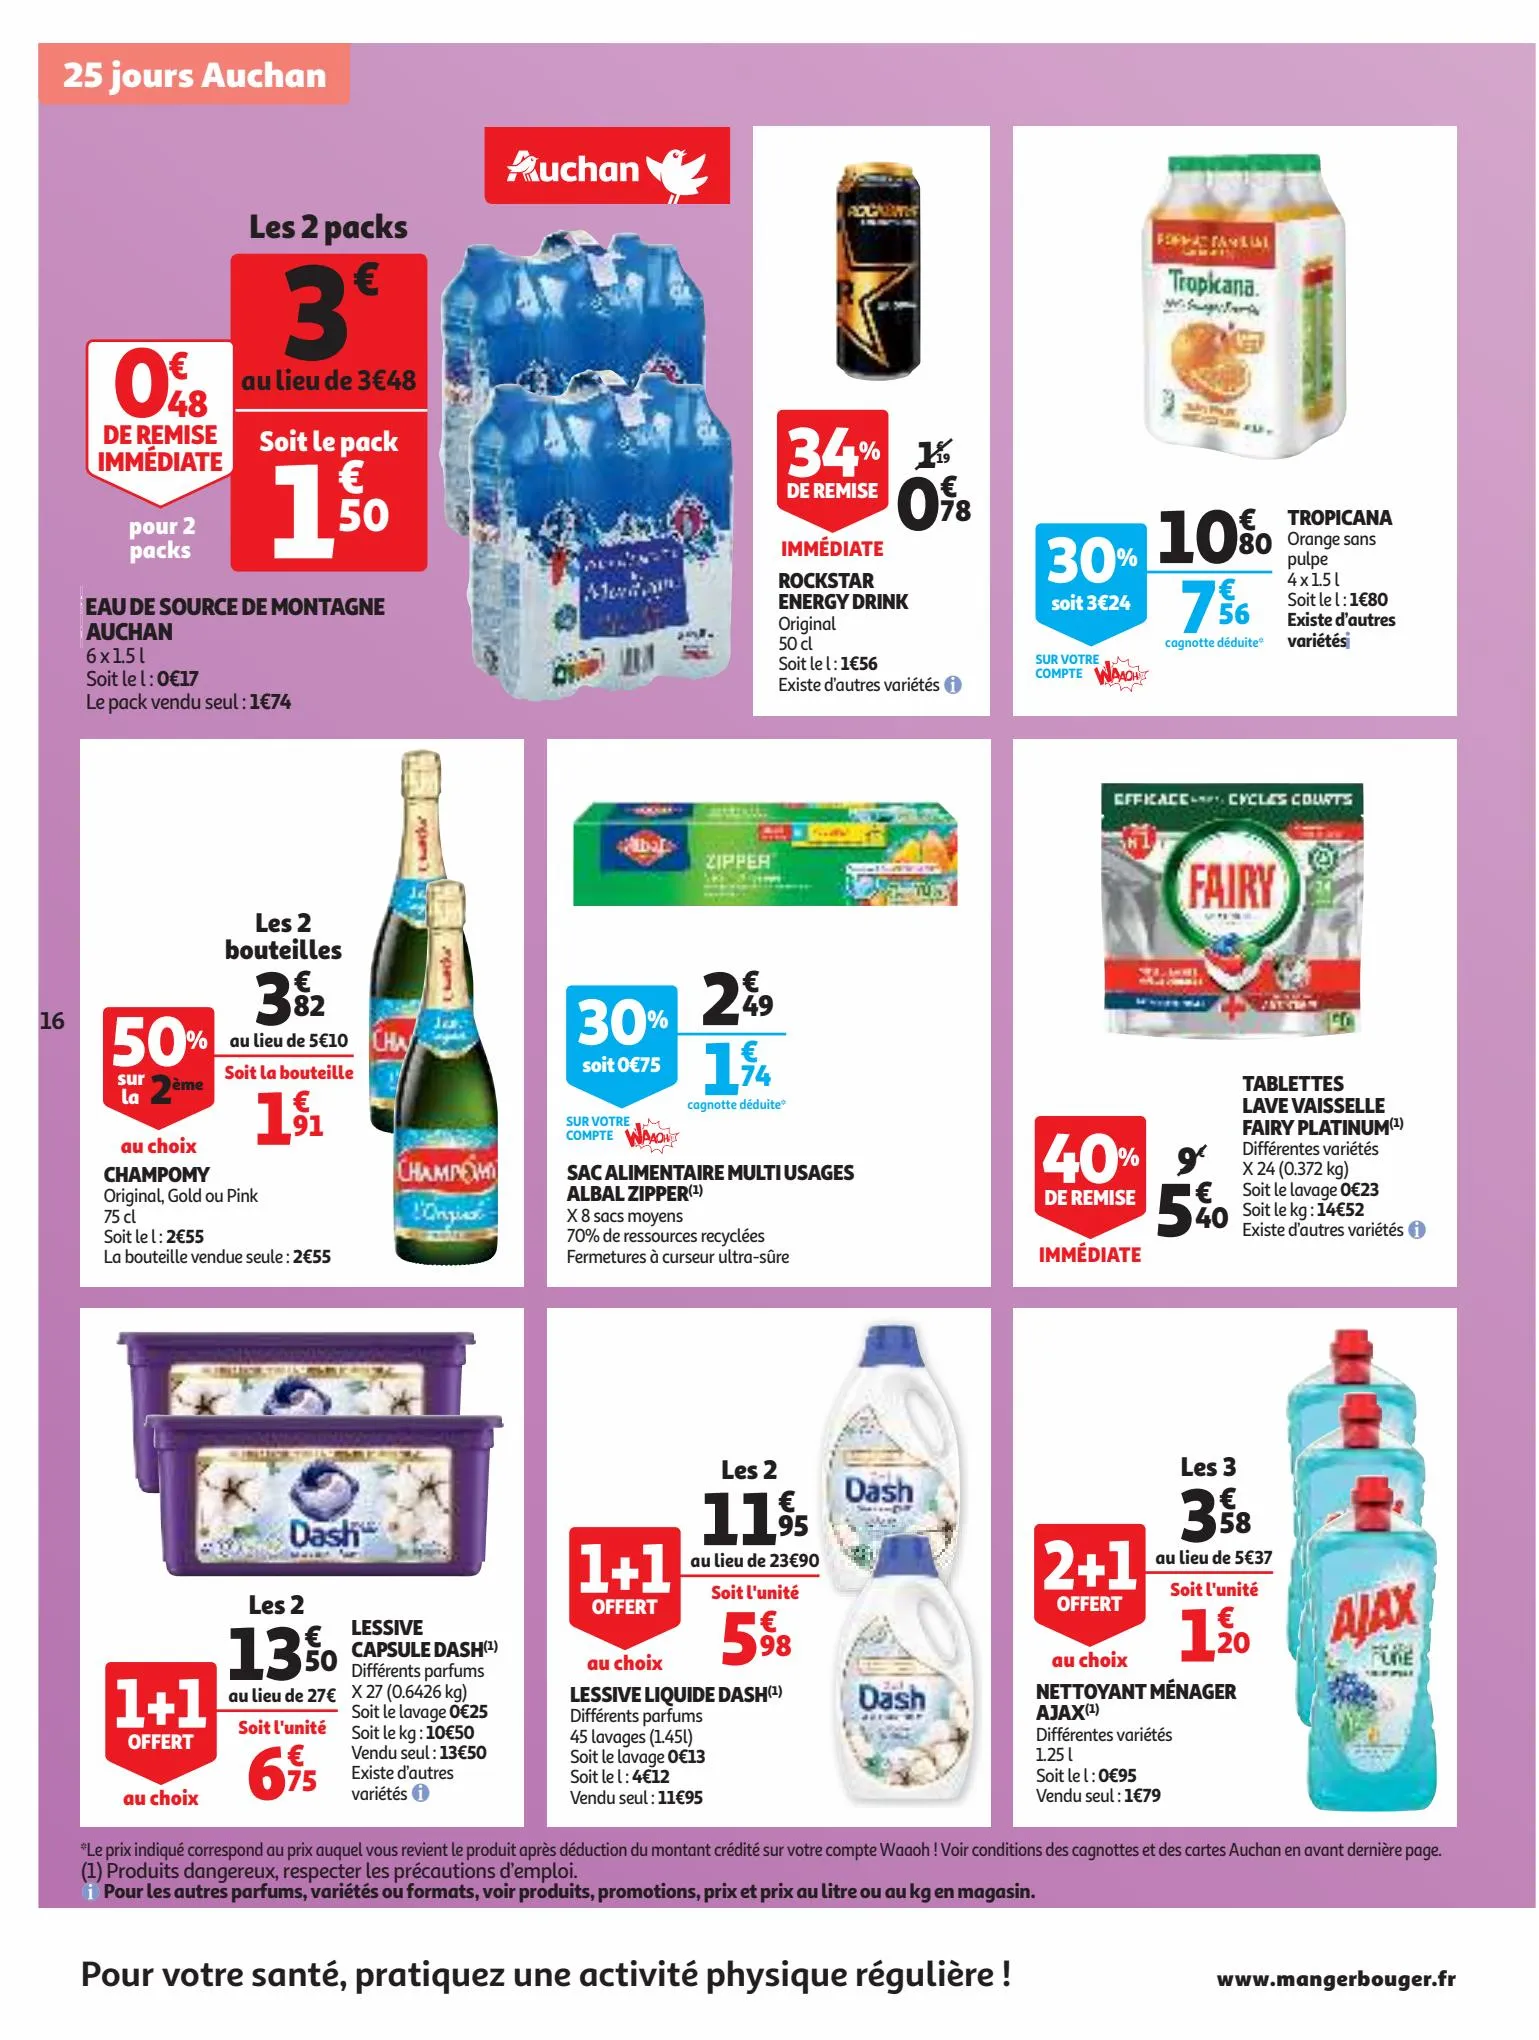 Catalogue 25 Jours Auchan, page 00016